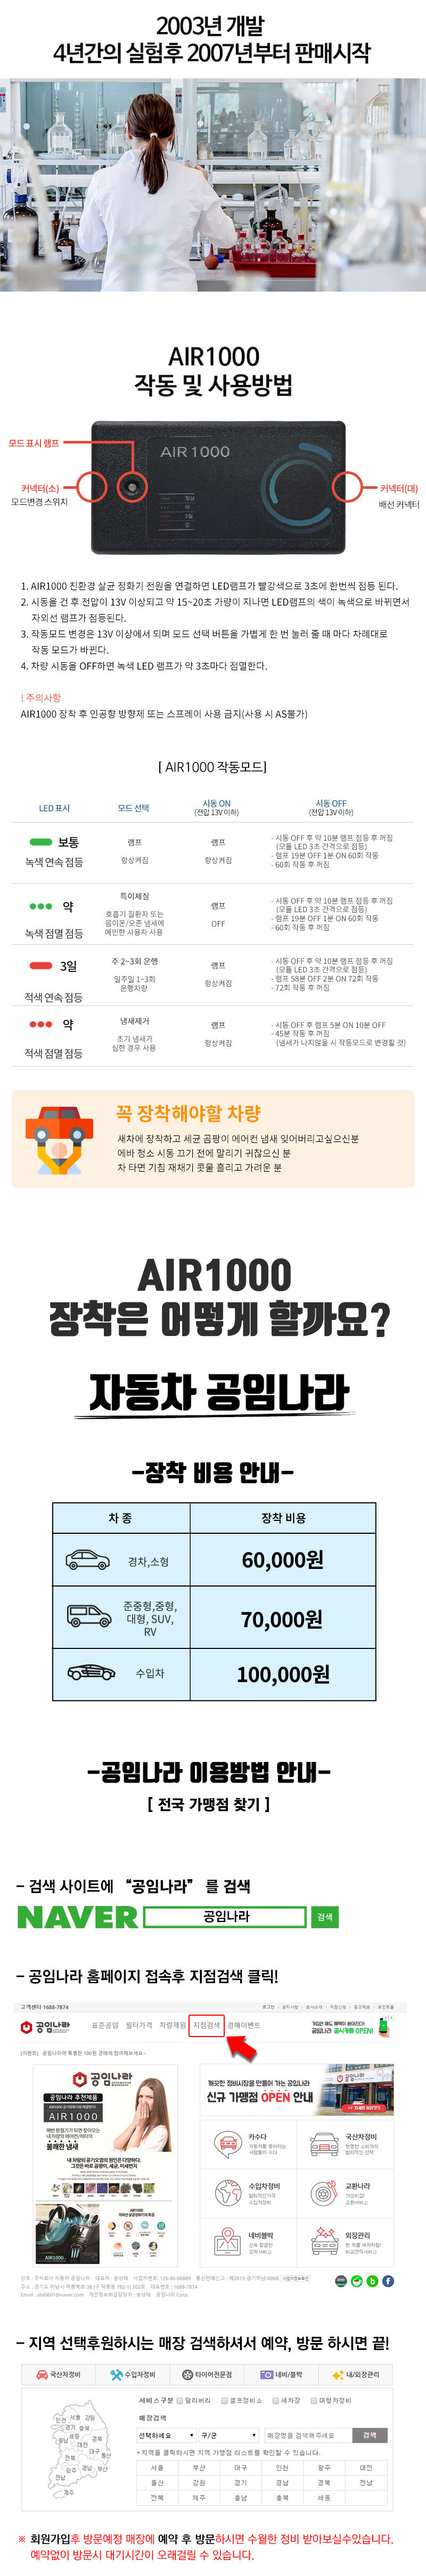 AIR1000_05.jpg